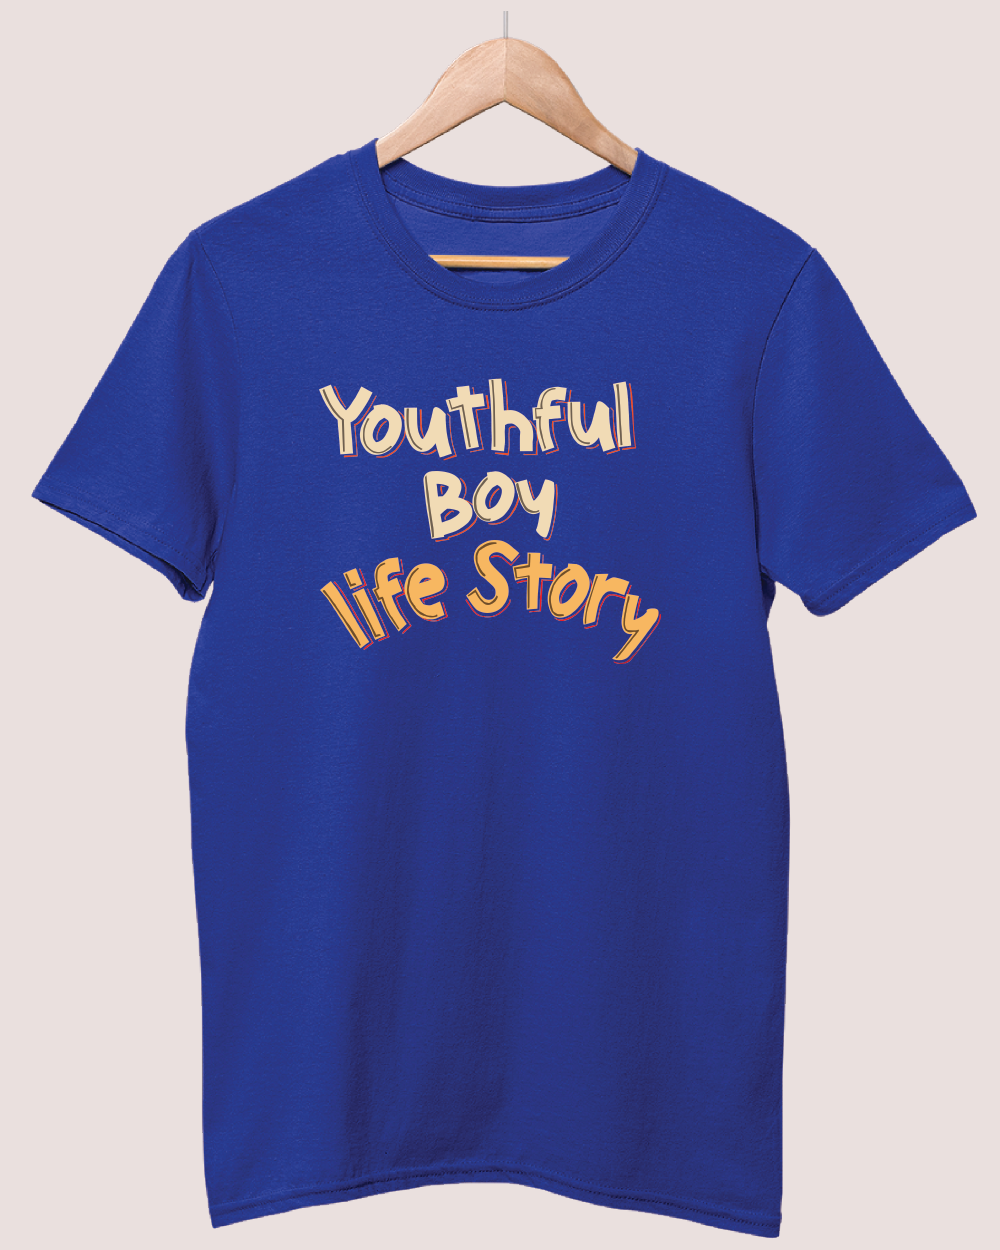 Youthful boy life story T-shirt